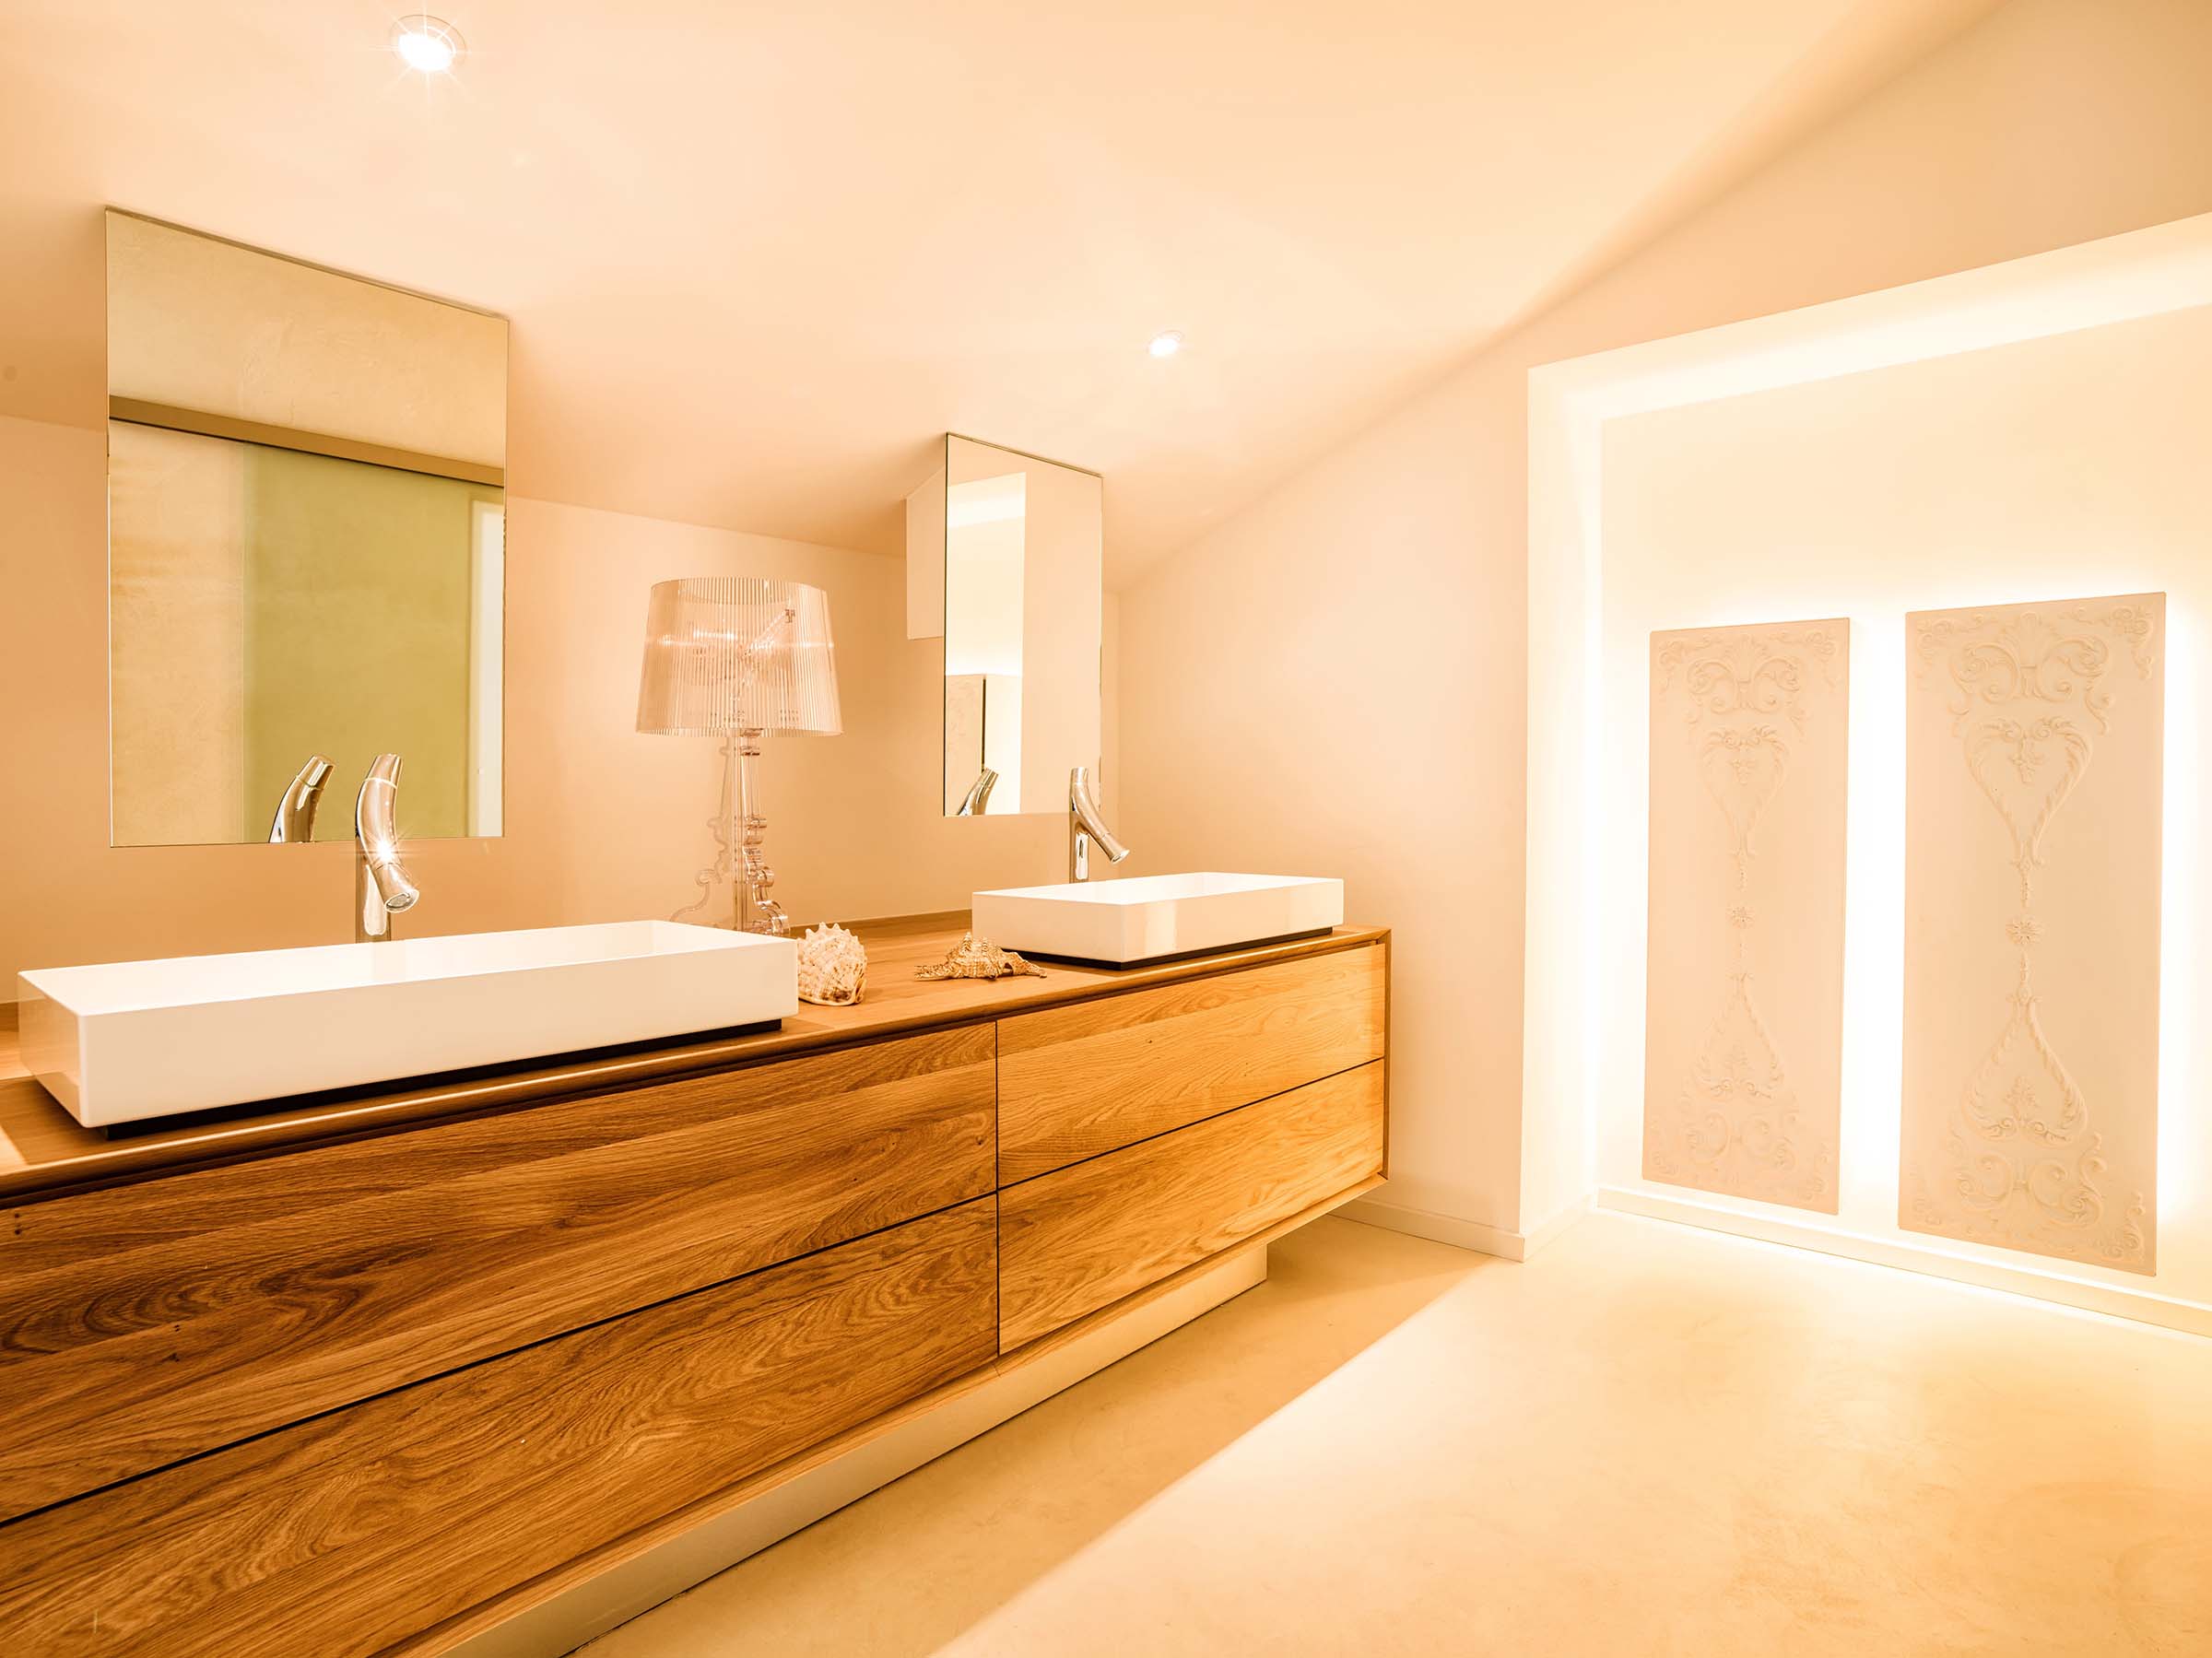 Exquisite Badezimmereinrichtung in einer luxuriösen Villa - Hochwertiges, cleanes und elegantes Design für anspruchsvollen Wohnkomfort - GROSSMANN INTERIORS